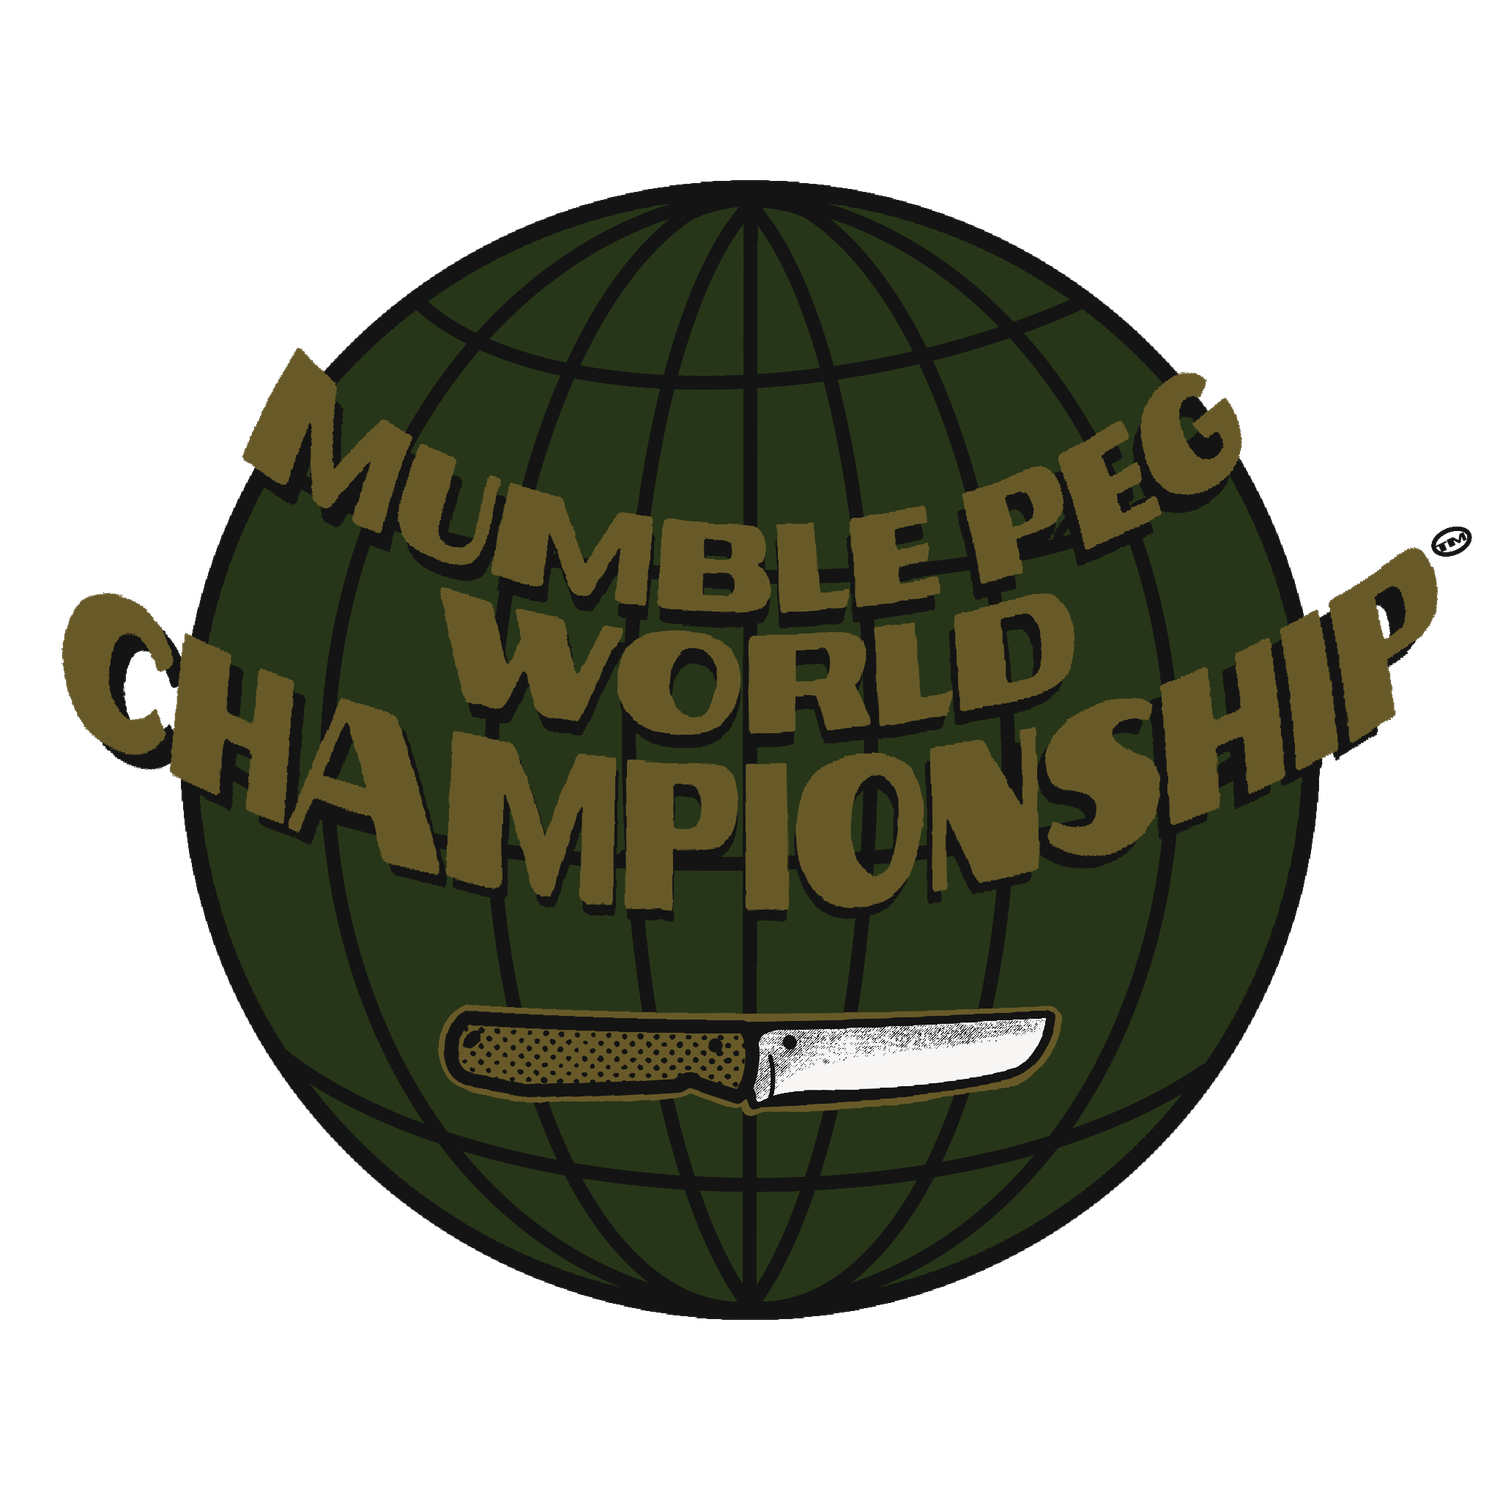 Mumble Peg World Championships 